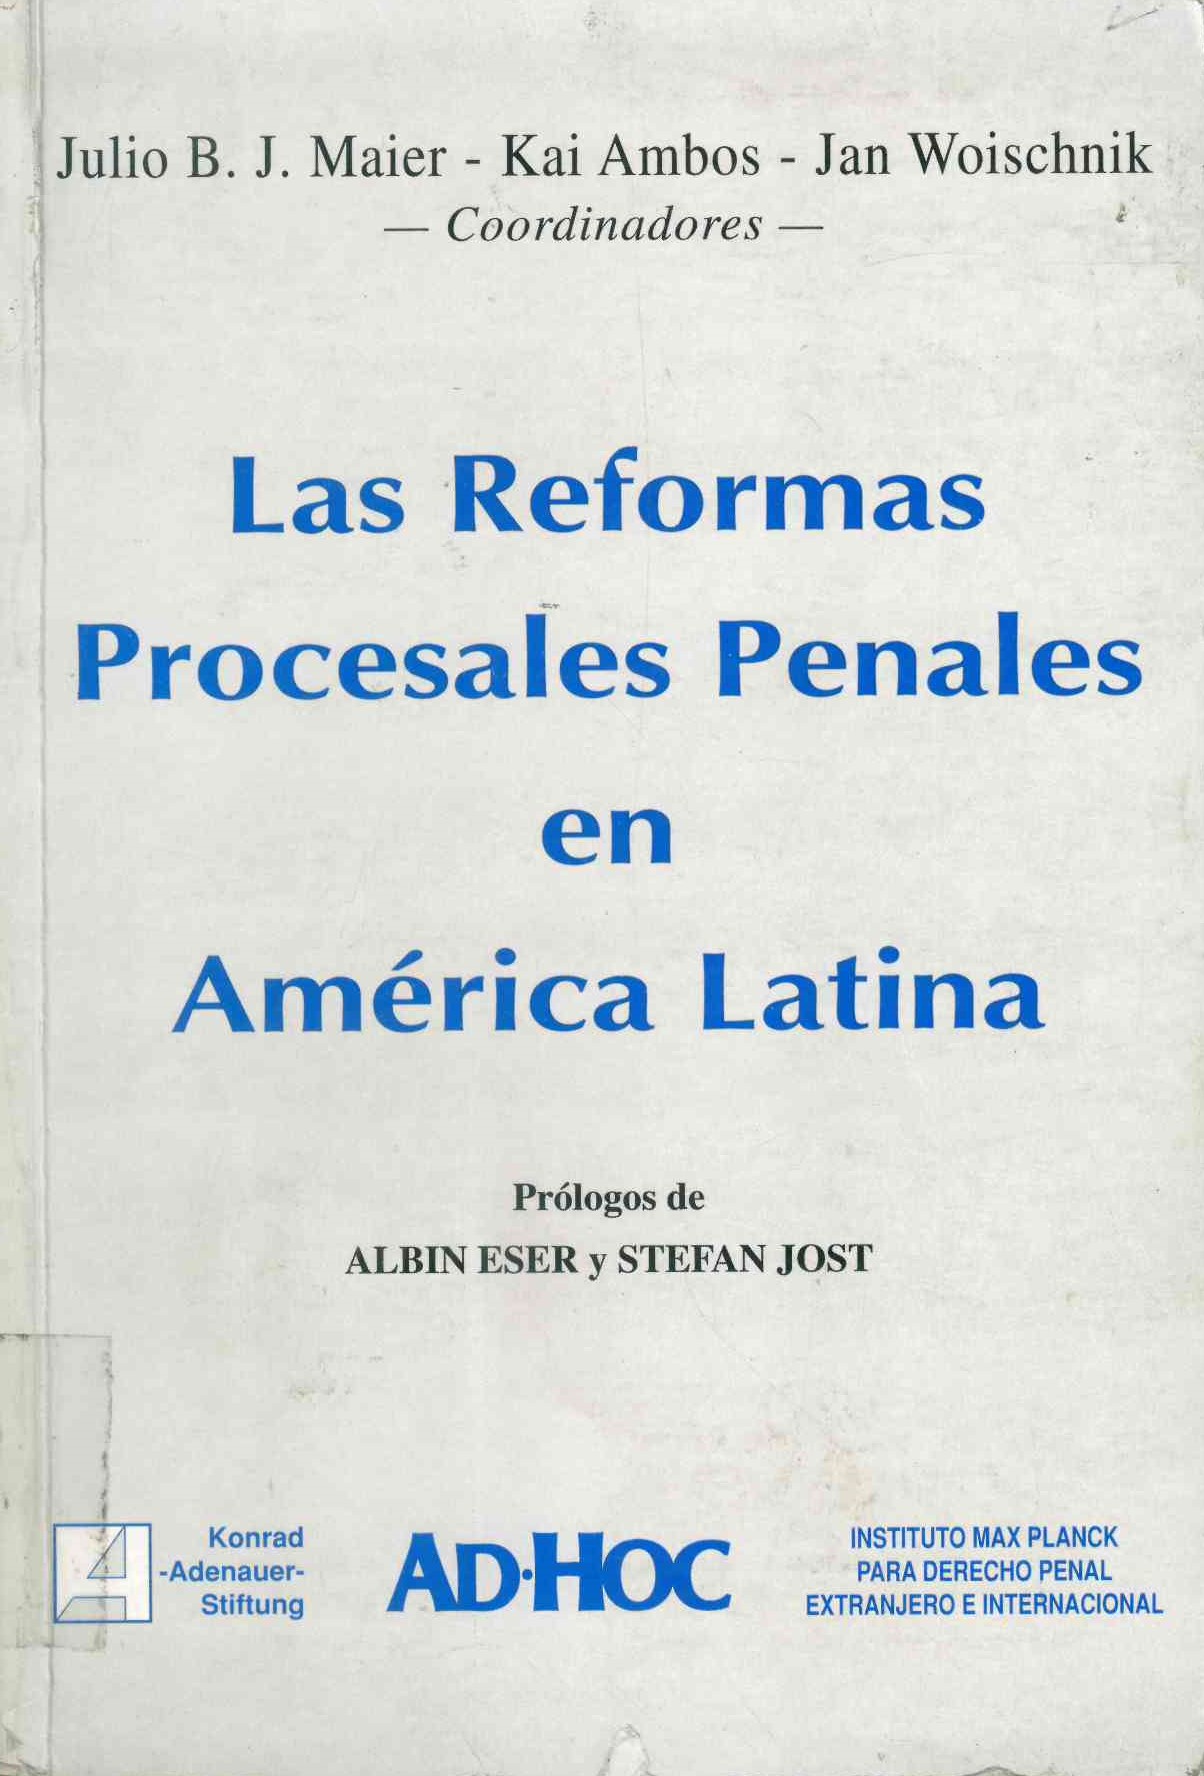 Las reformas procesales en América Latina